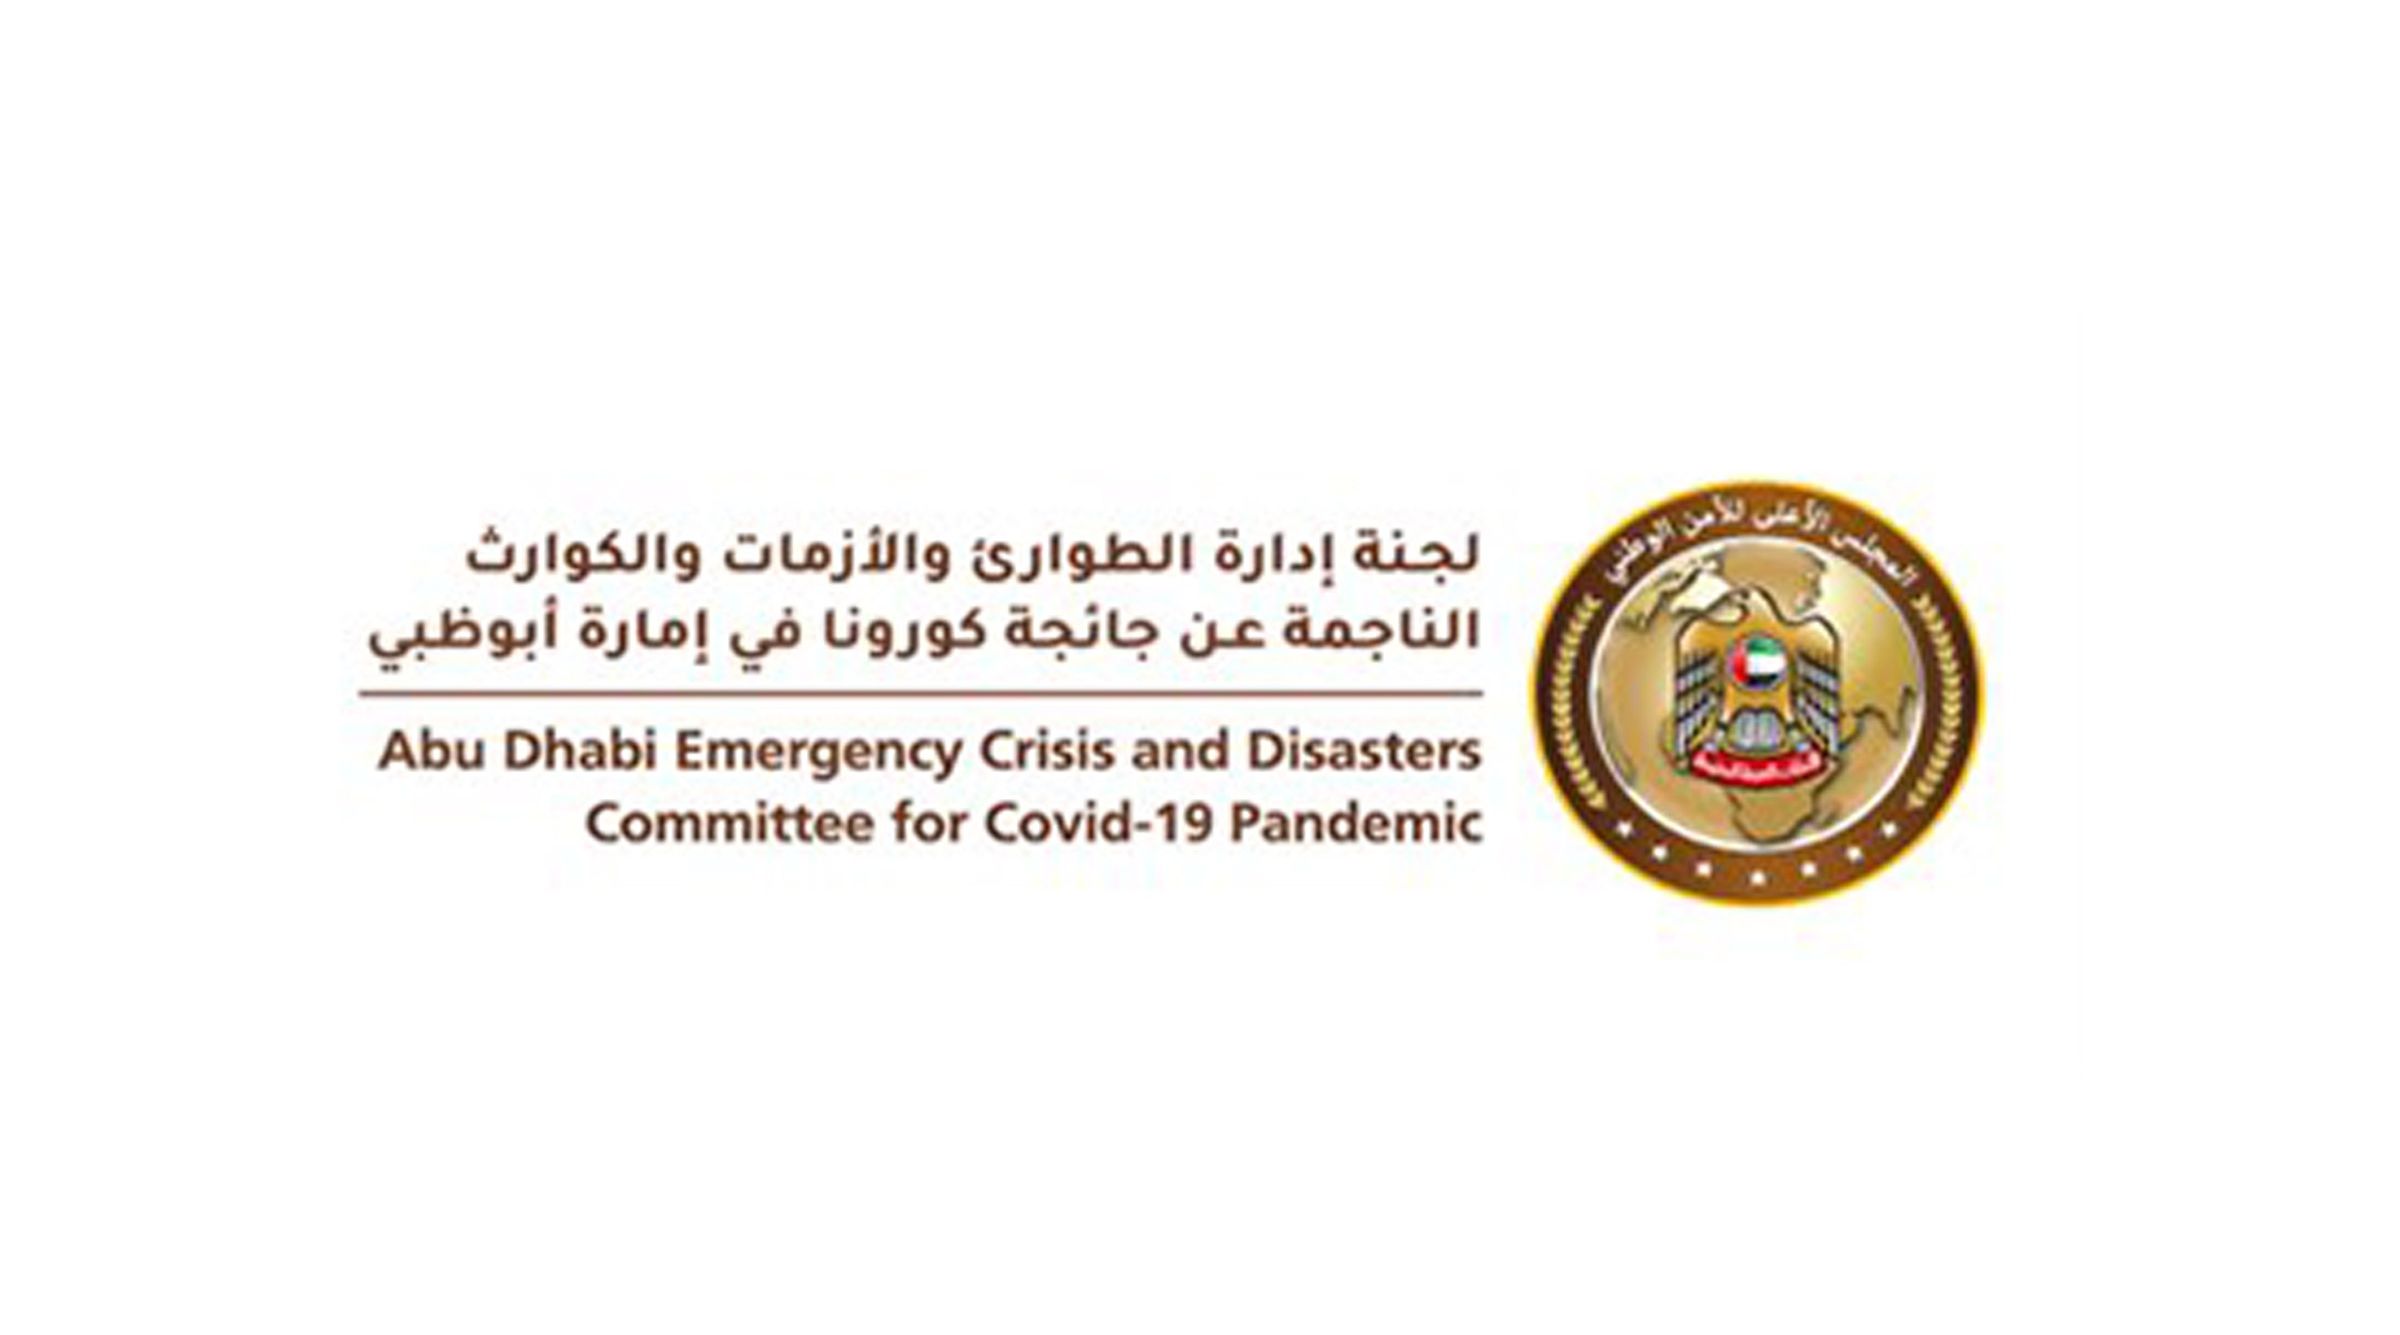 تحديث إجراءات الحجر المنزلي للمخالطين لحالة إيجابية لكوفيد-19 في أبوظبي